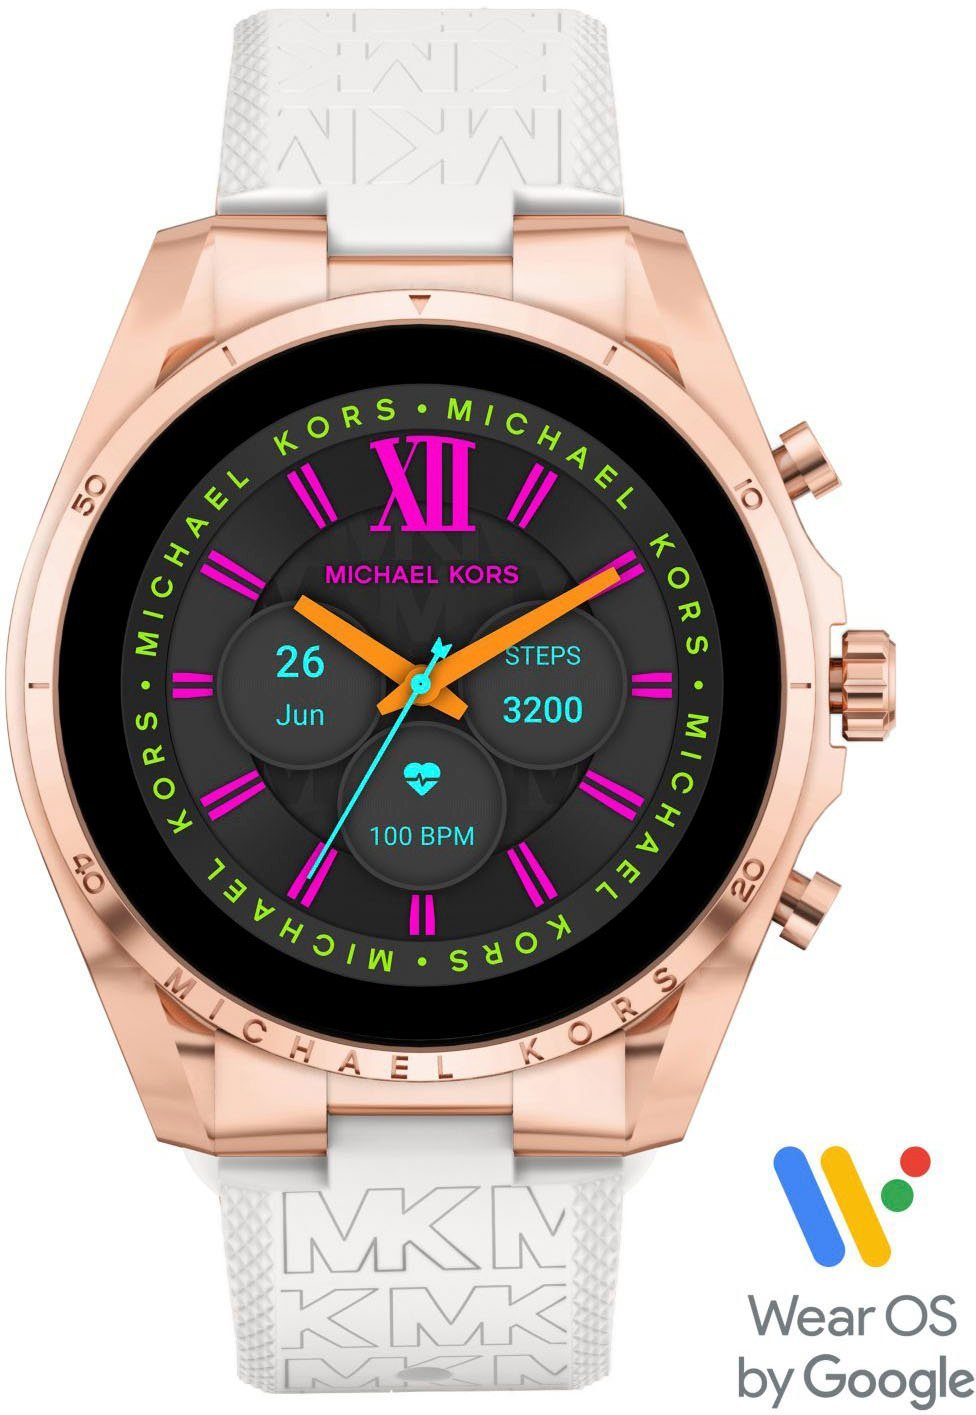 Top-Programm MICHAEL KORS Smartwatch GEN by Google) OS ACCESS MKT5153 BRADSHAW, (Wear 6